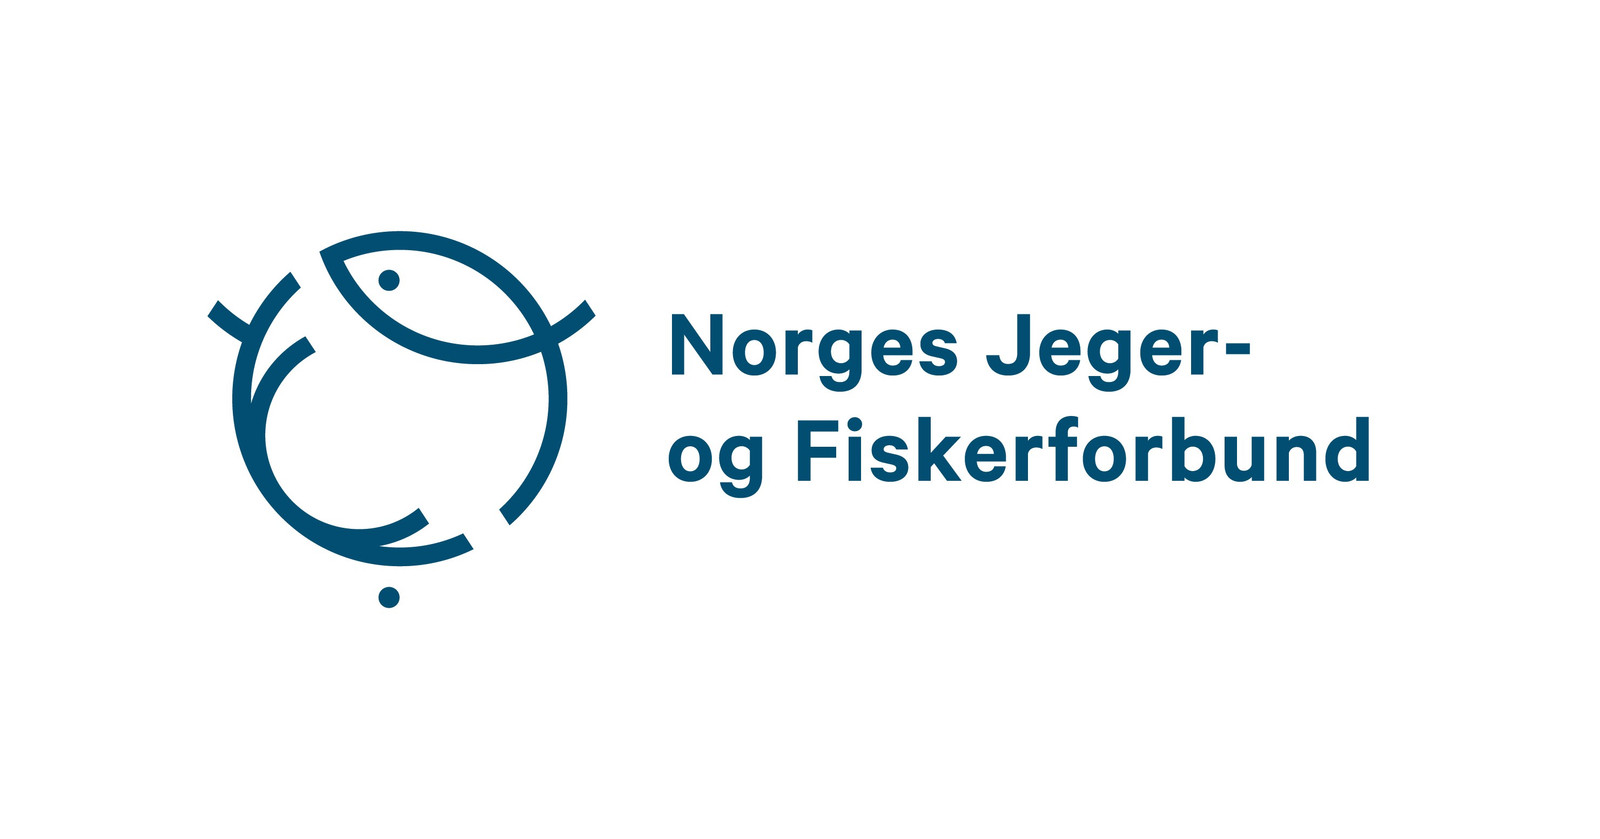 Norges Jeger og Fiskerforbund